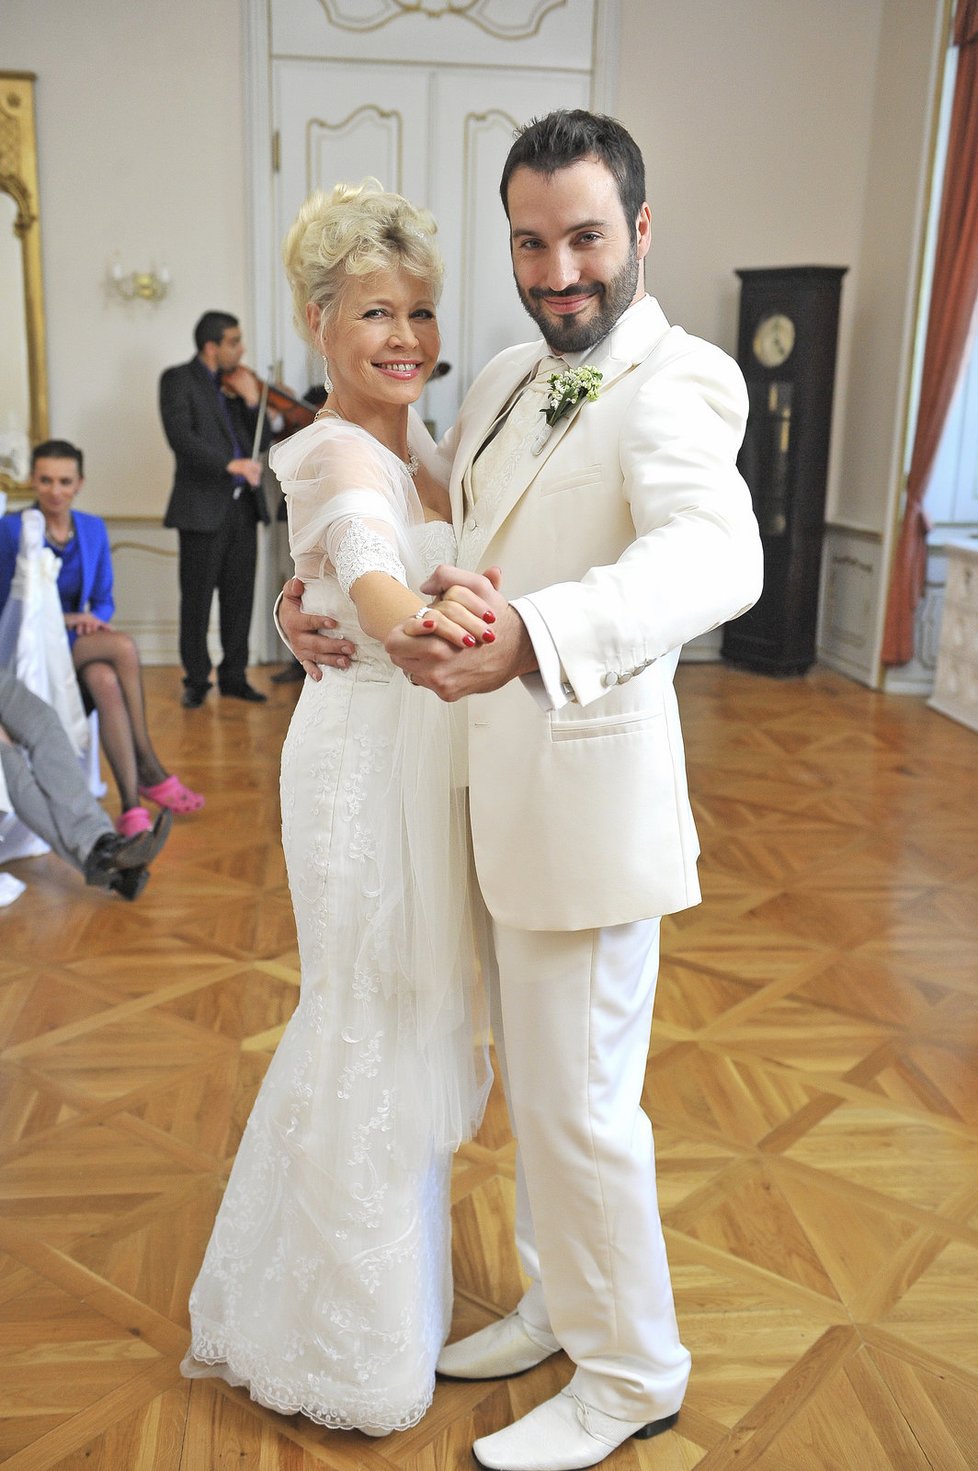 Šaty, které Švandová oblékla jako seriálová nevěsta, byly speciálně pro zapůjčené z luxusního svatebního salonu.